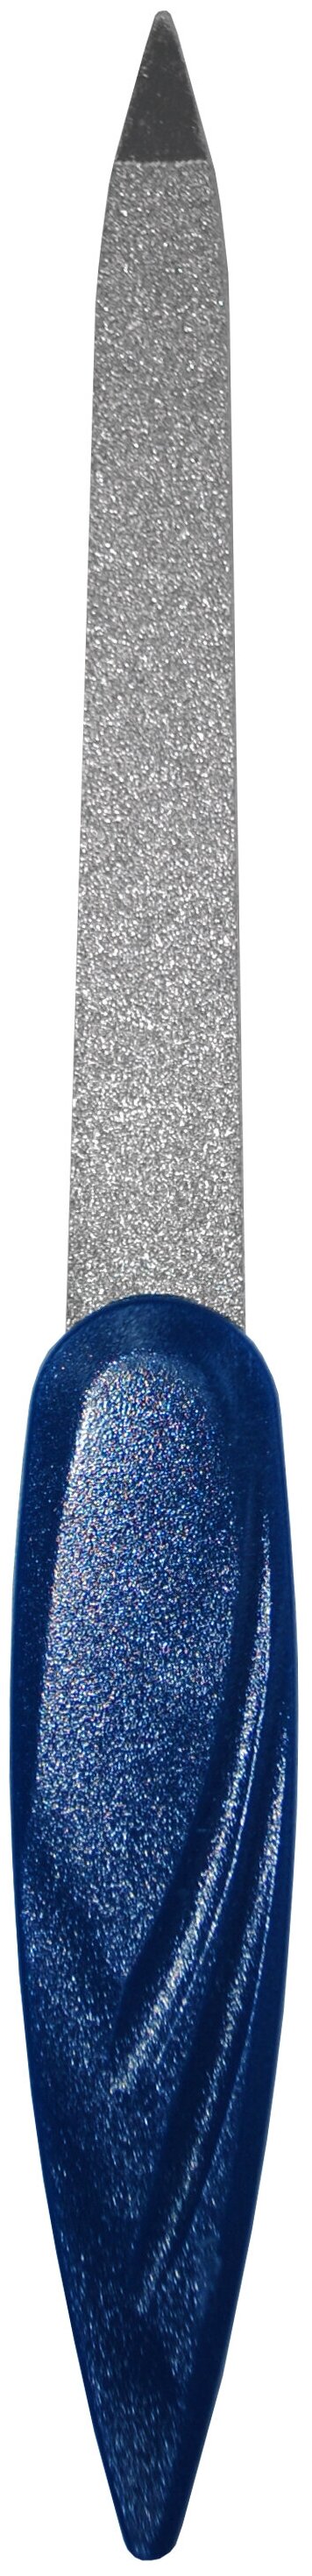 Studio Style Пилка для ногтей / Маникюрная пилка металлическая синяя